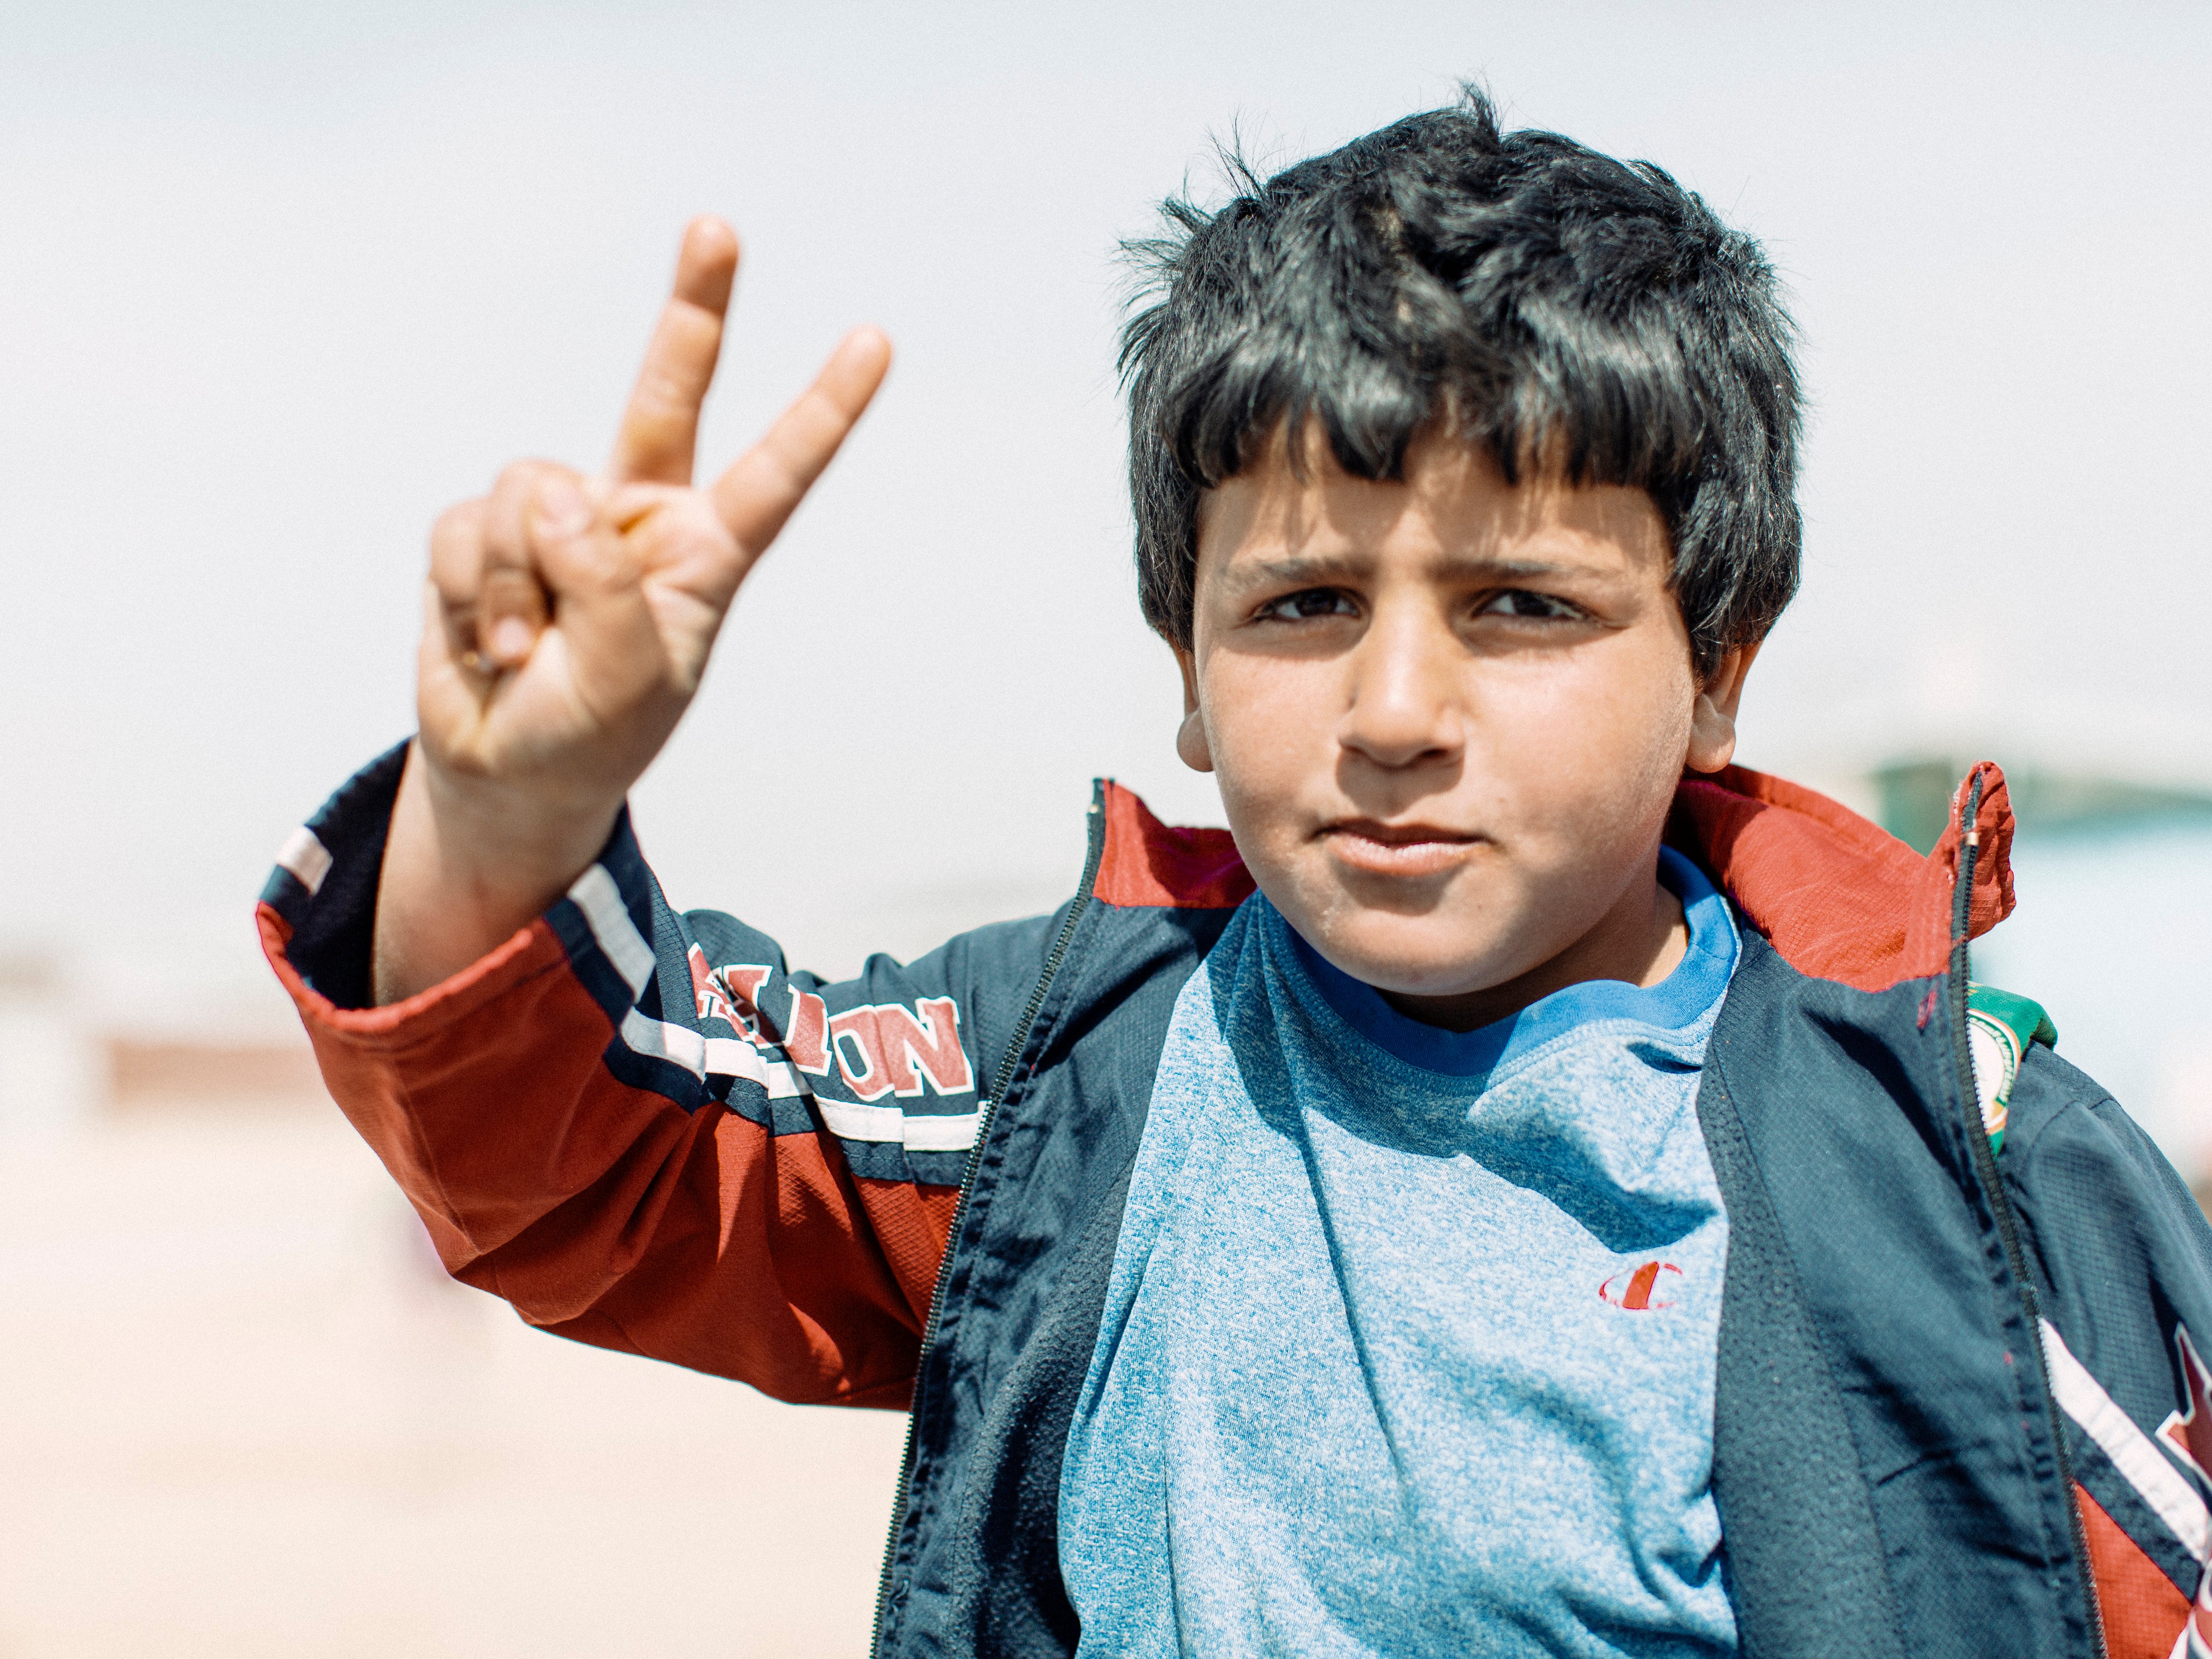 A young boy at Zaatari Camp, Jordan